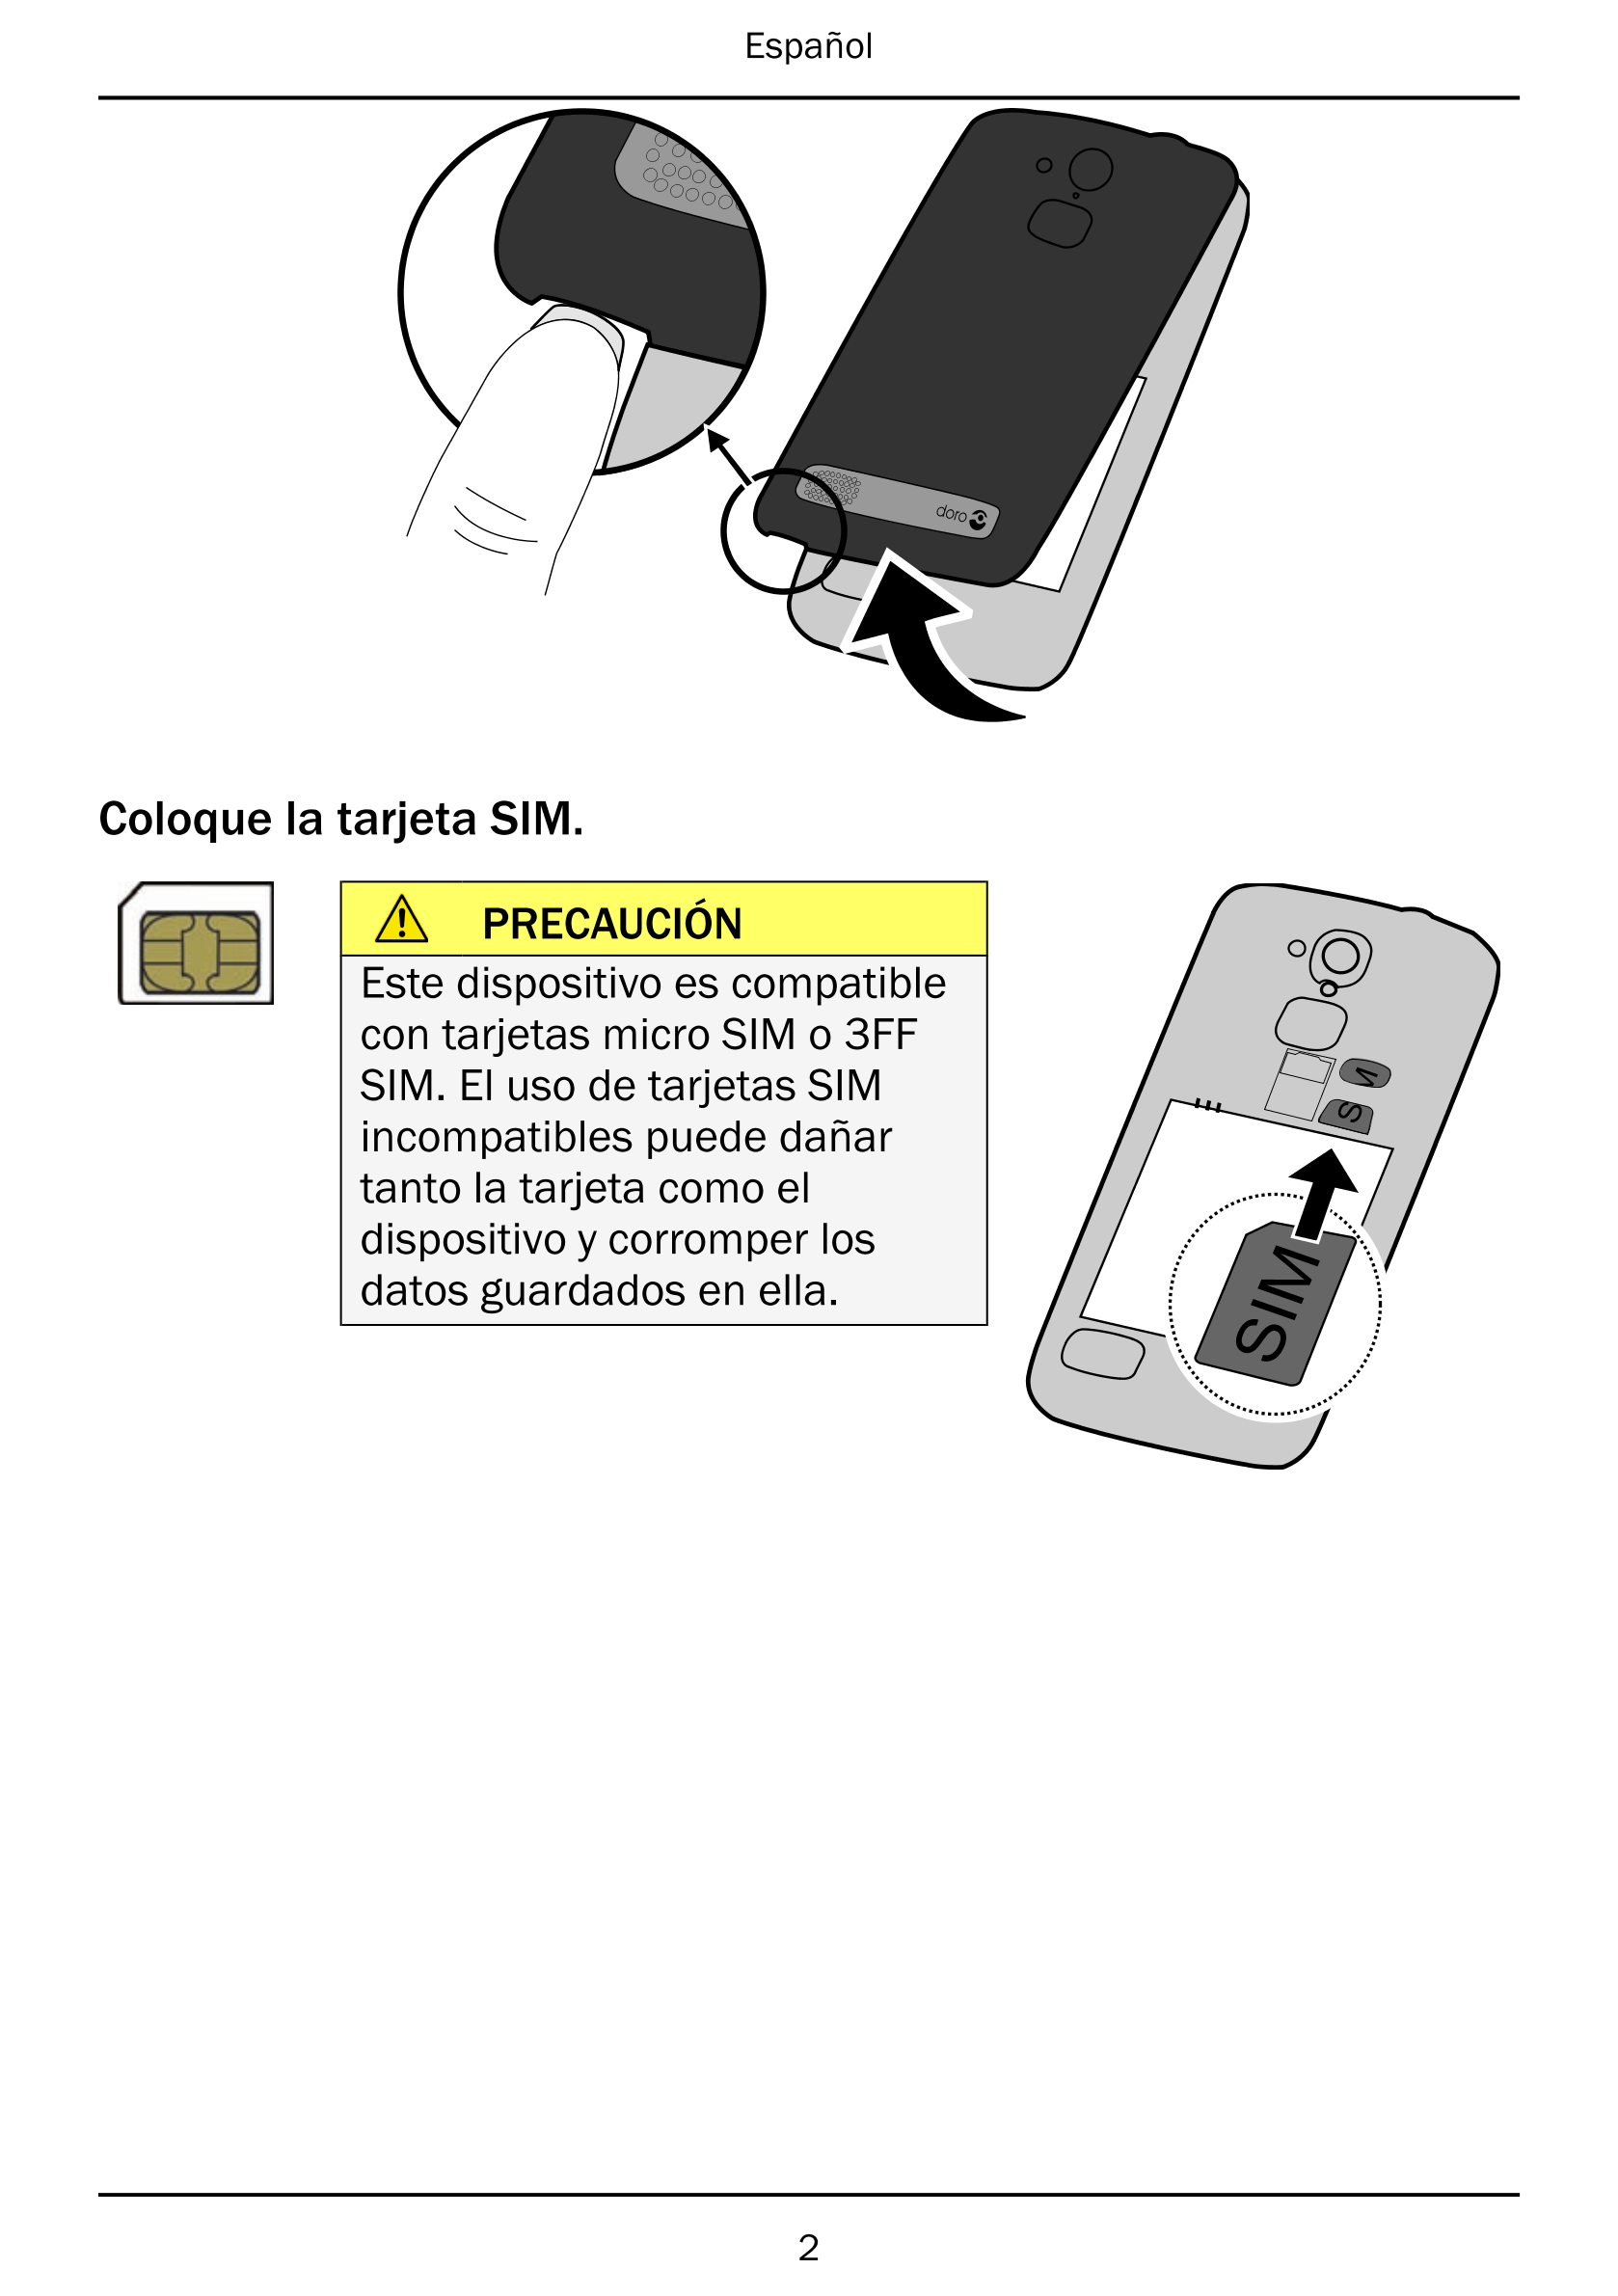 Español
Coloque la tarjeta SIM.
PRECAUCIÓN
Este dispositivo es compatible
con tarjetas micro SIM o 3FF
SIM. El uso de tarjetas S